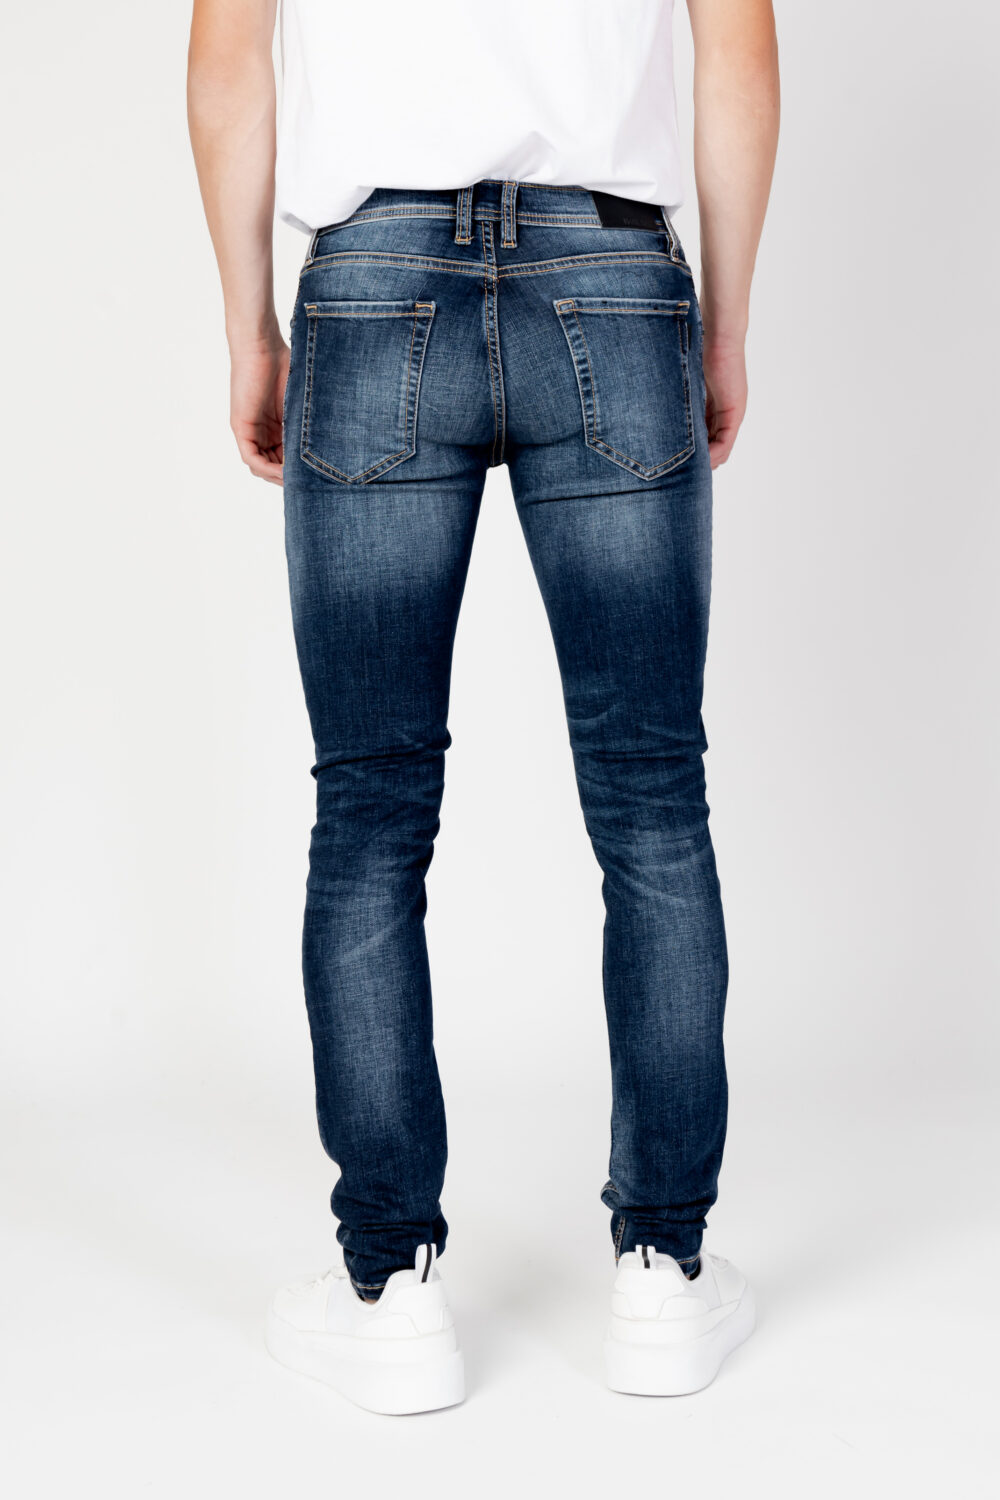 Jeans skinny Antony Morato gilmour super Denim - Foto 7